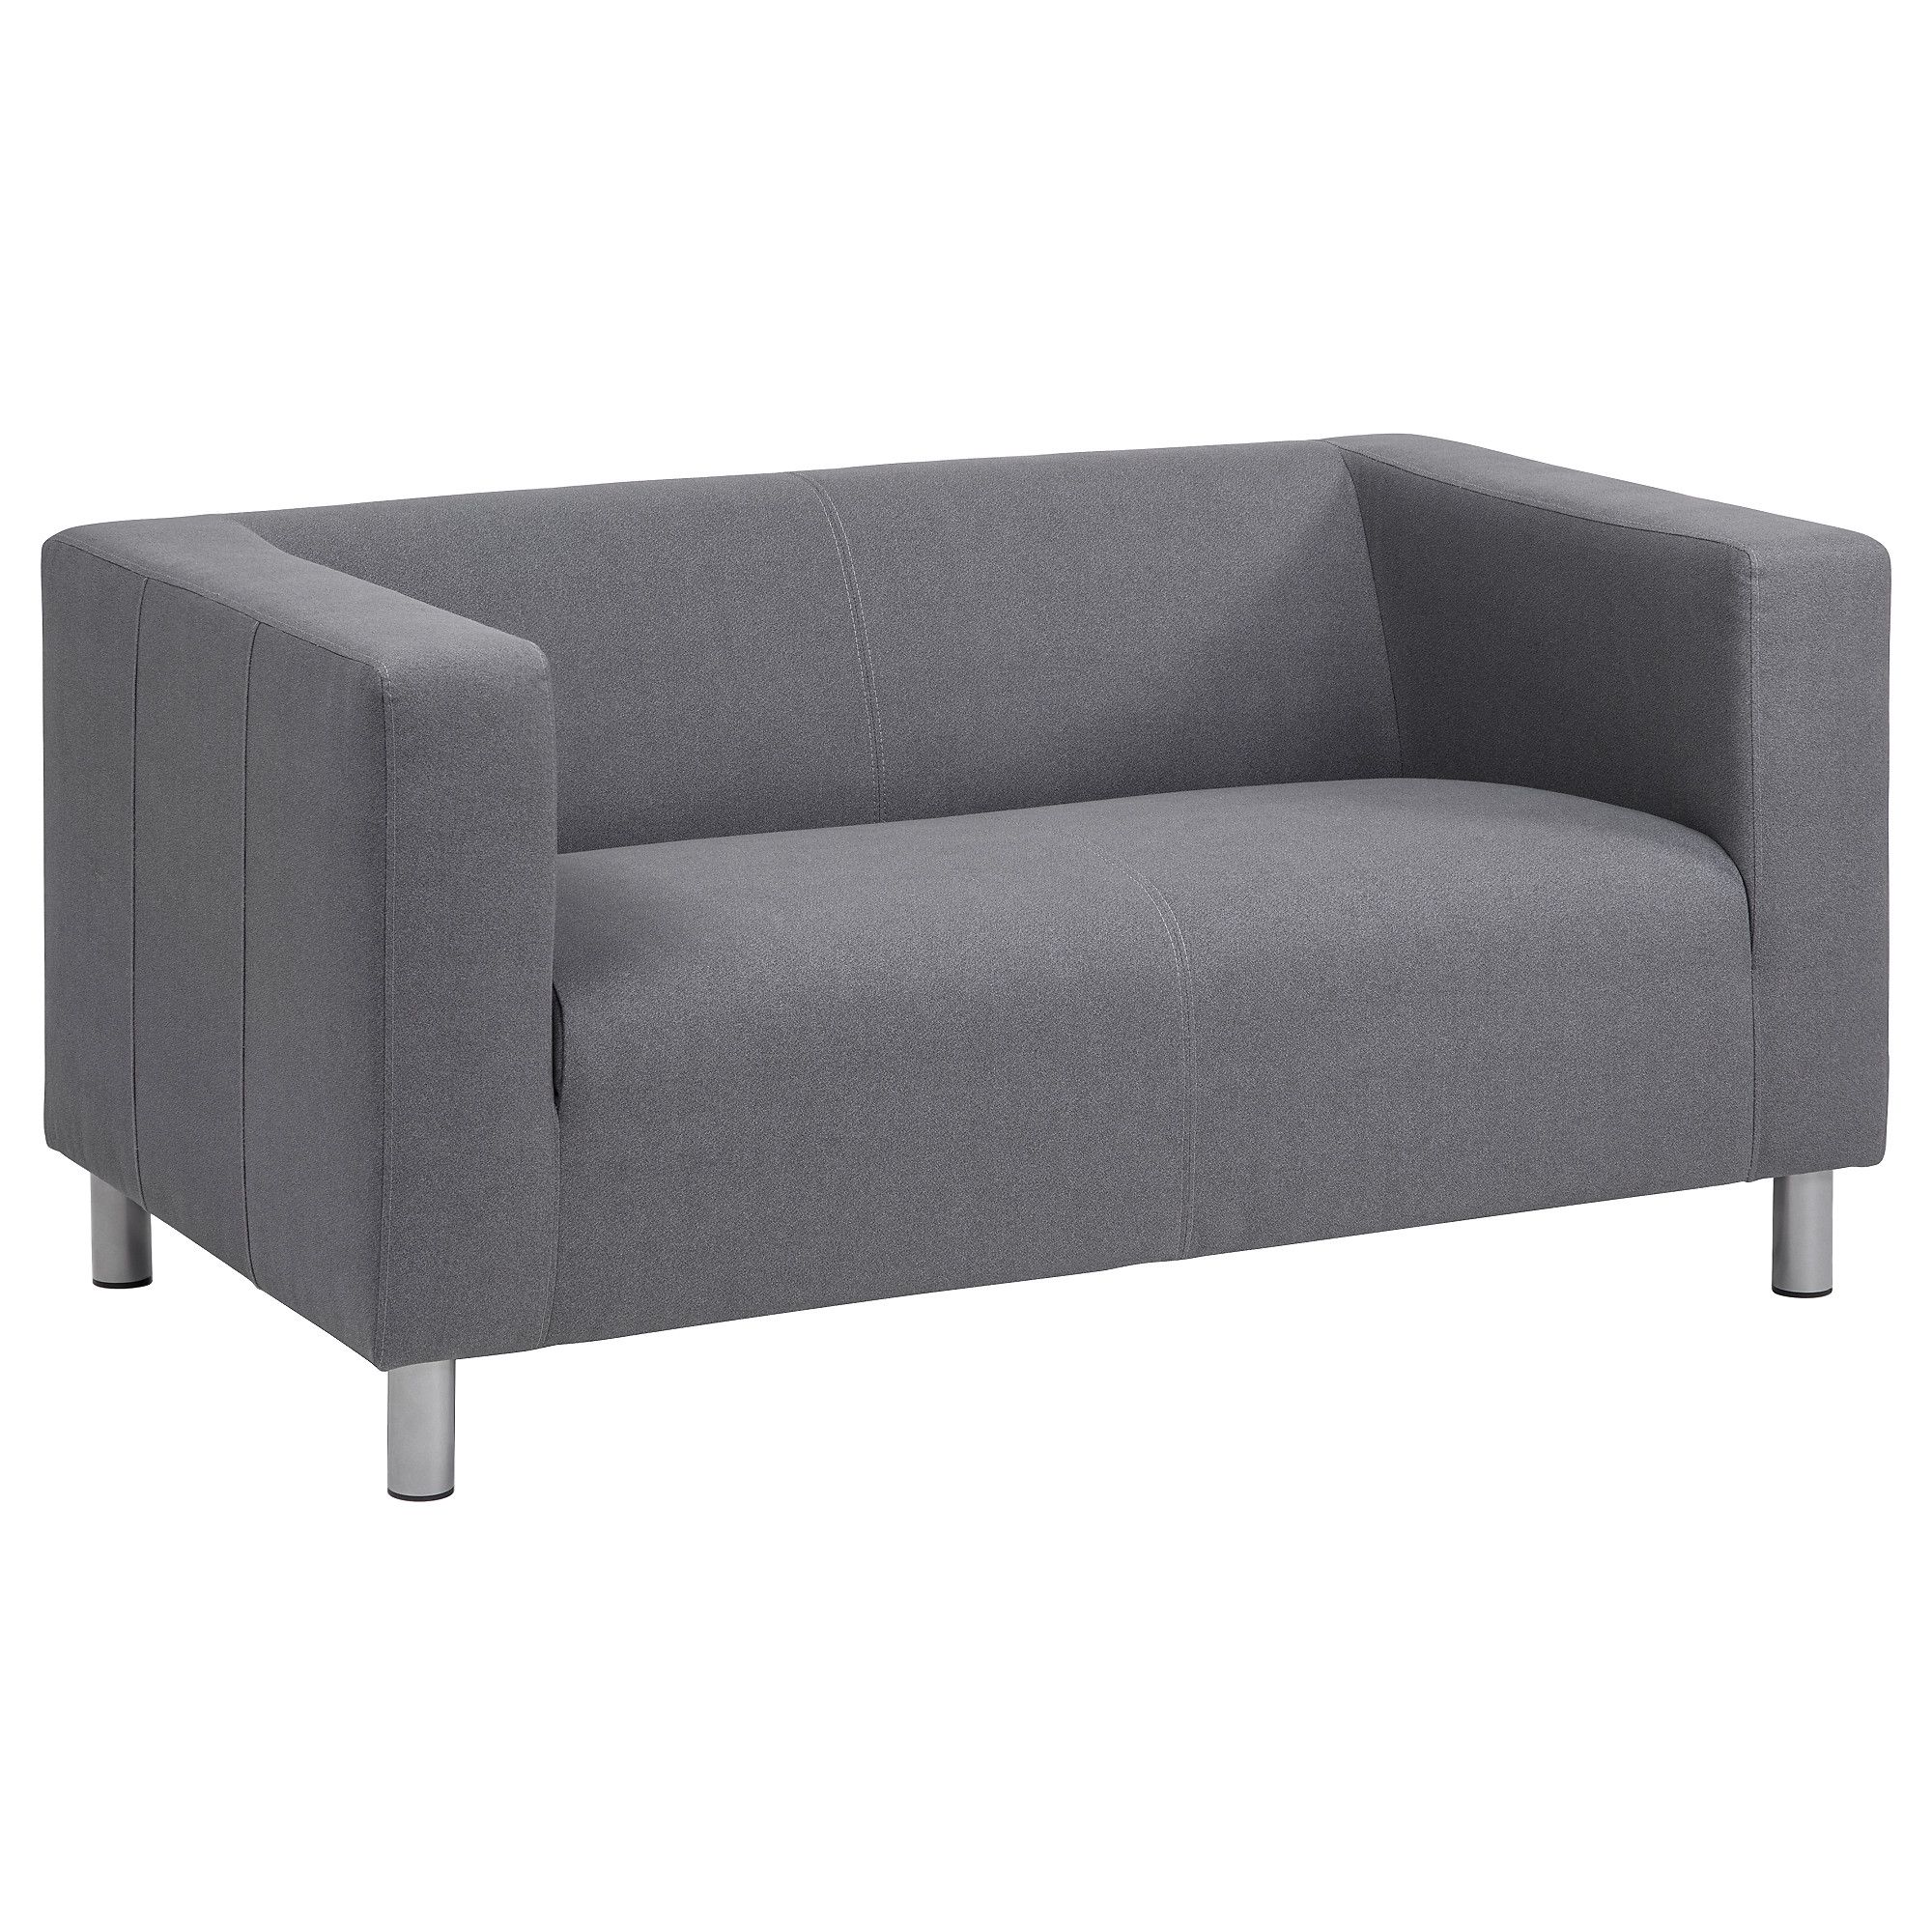 Klippan Compact 2 Seat Sofa Flackarp Grey – Ikea Throughout Trendy Ikea Two Seater Sofas (View 1 of 20)